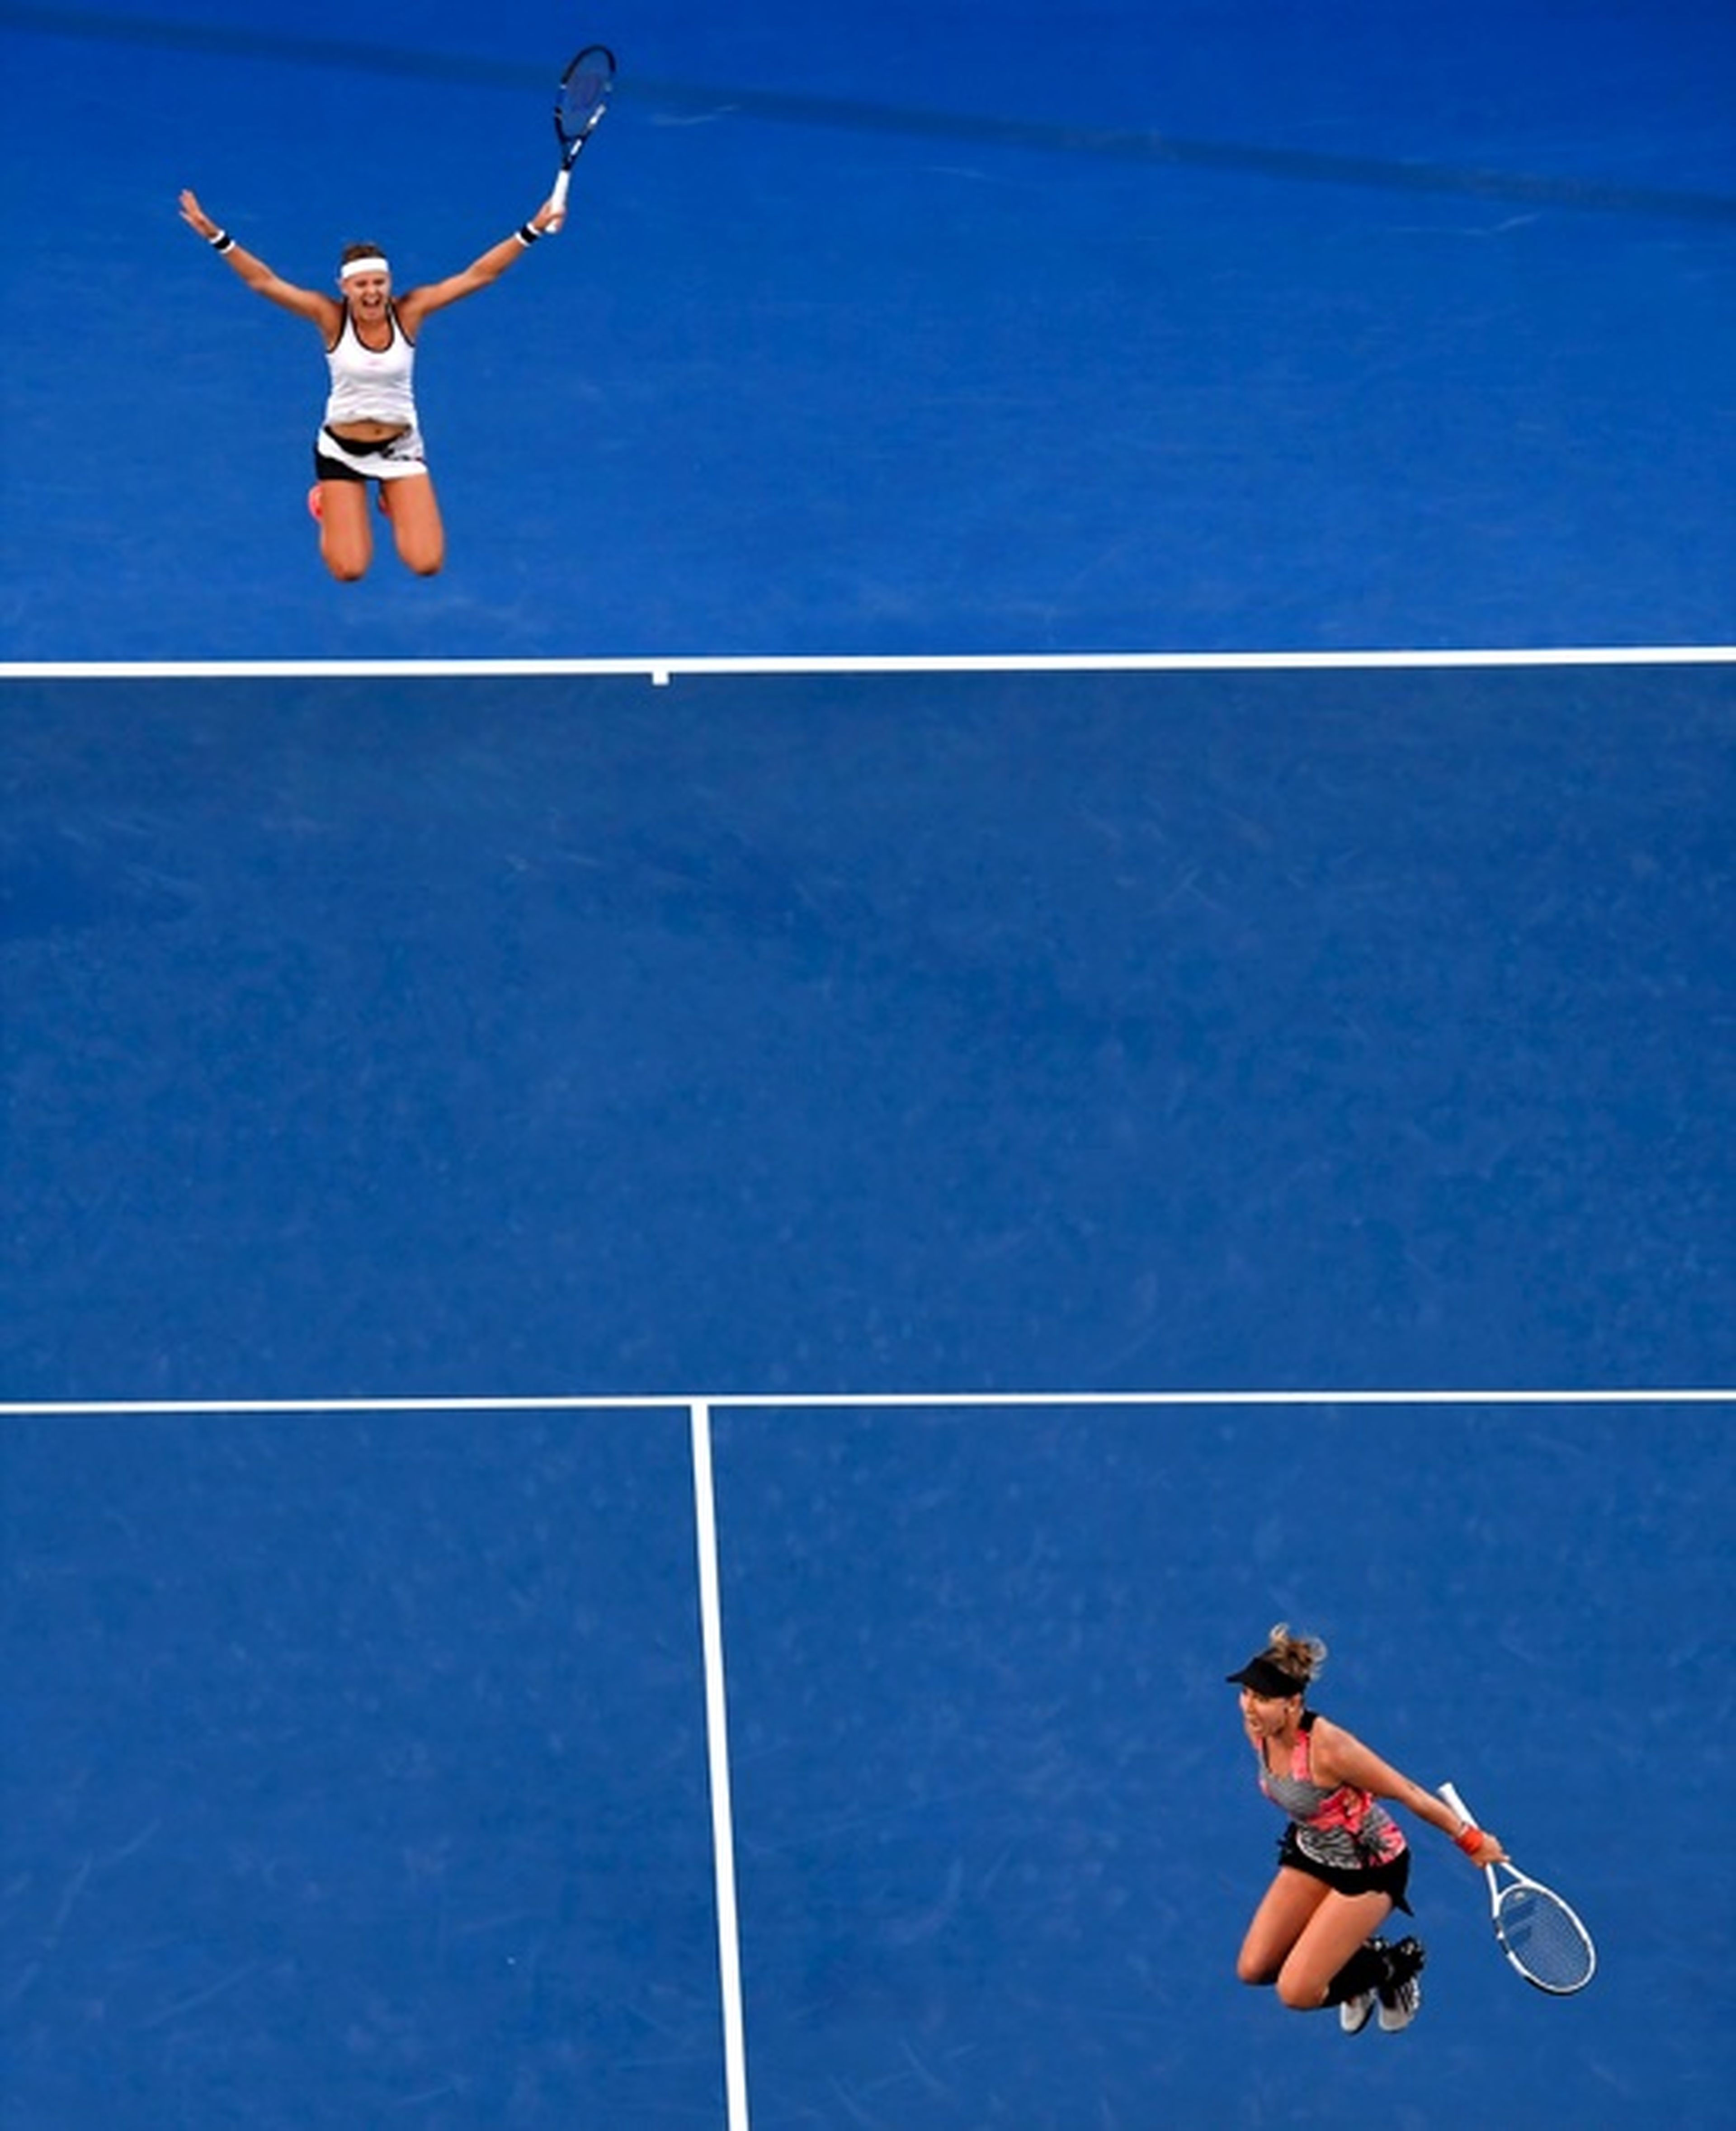 fotos deporte 2017: La pareja de dobles formada por Bethanie Mattek-Sands (EE.UU.) y Lucie Safarova (República Checa) celebran ganar la final en el Abierto de Australia